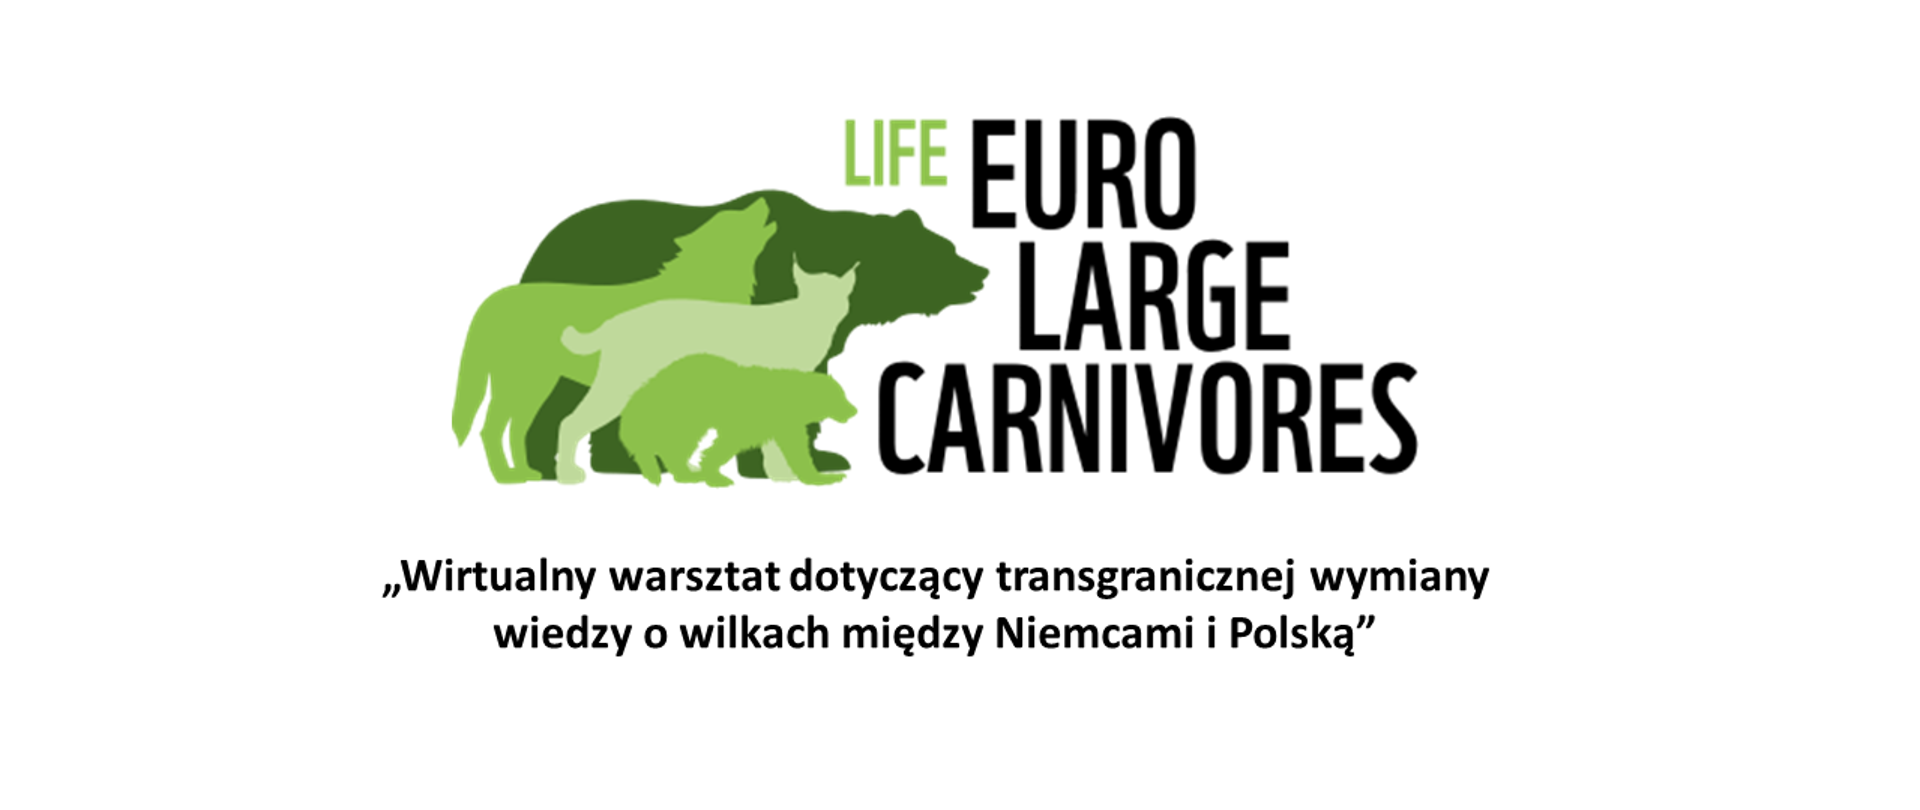 Grafika przedstawiająca zielone kontury niedźwiedzia, wilka, rysia i borsuka nałożone na siebie. Oraz napisy: LIFE EuroLargeCarnivores oraz „Wirtualny warsztat dotyczący transgranicznej wymiany wiedzy o wilkach między Niemcami i Polską”